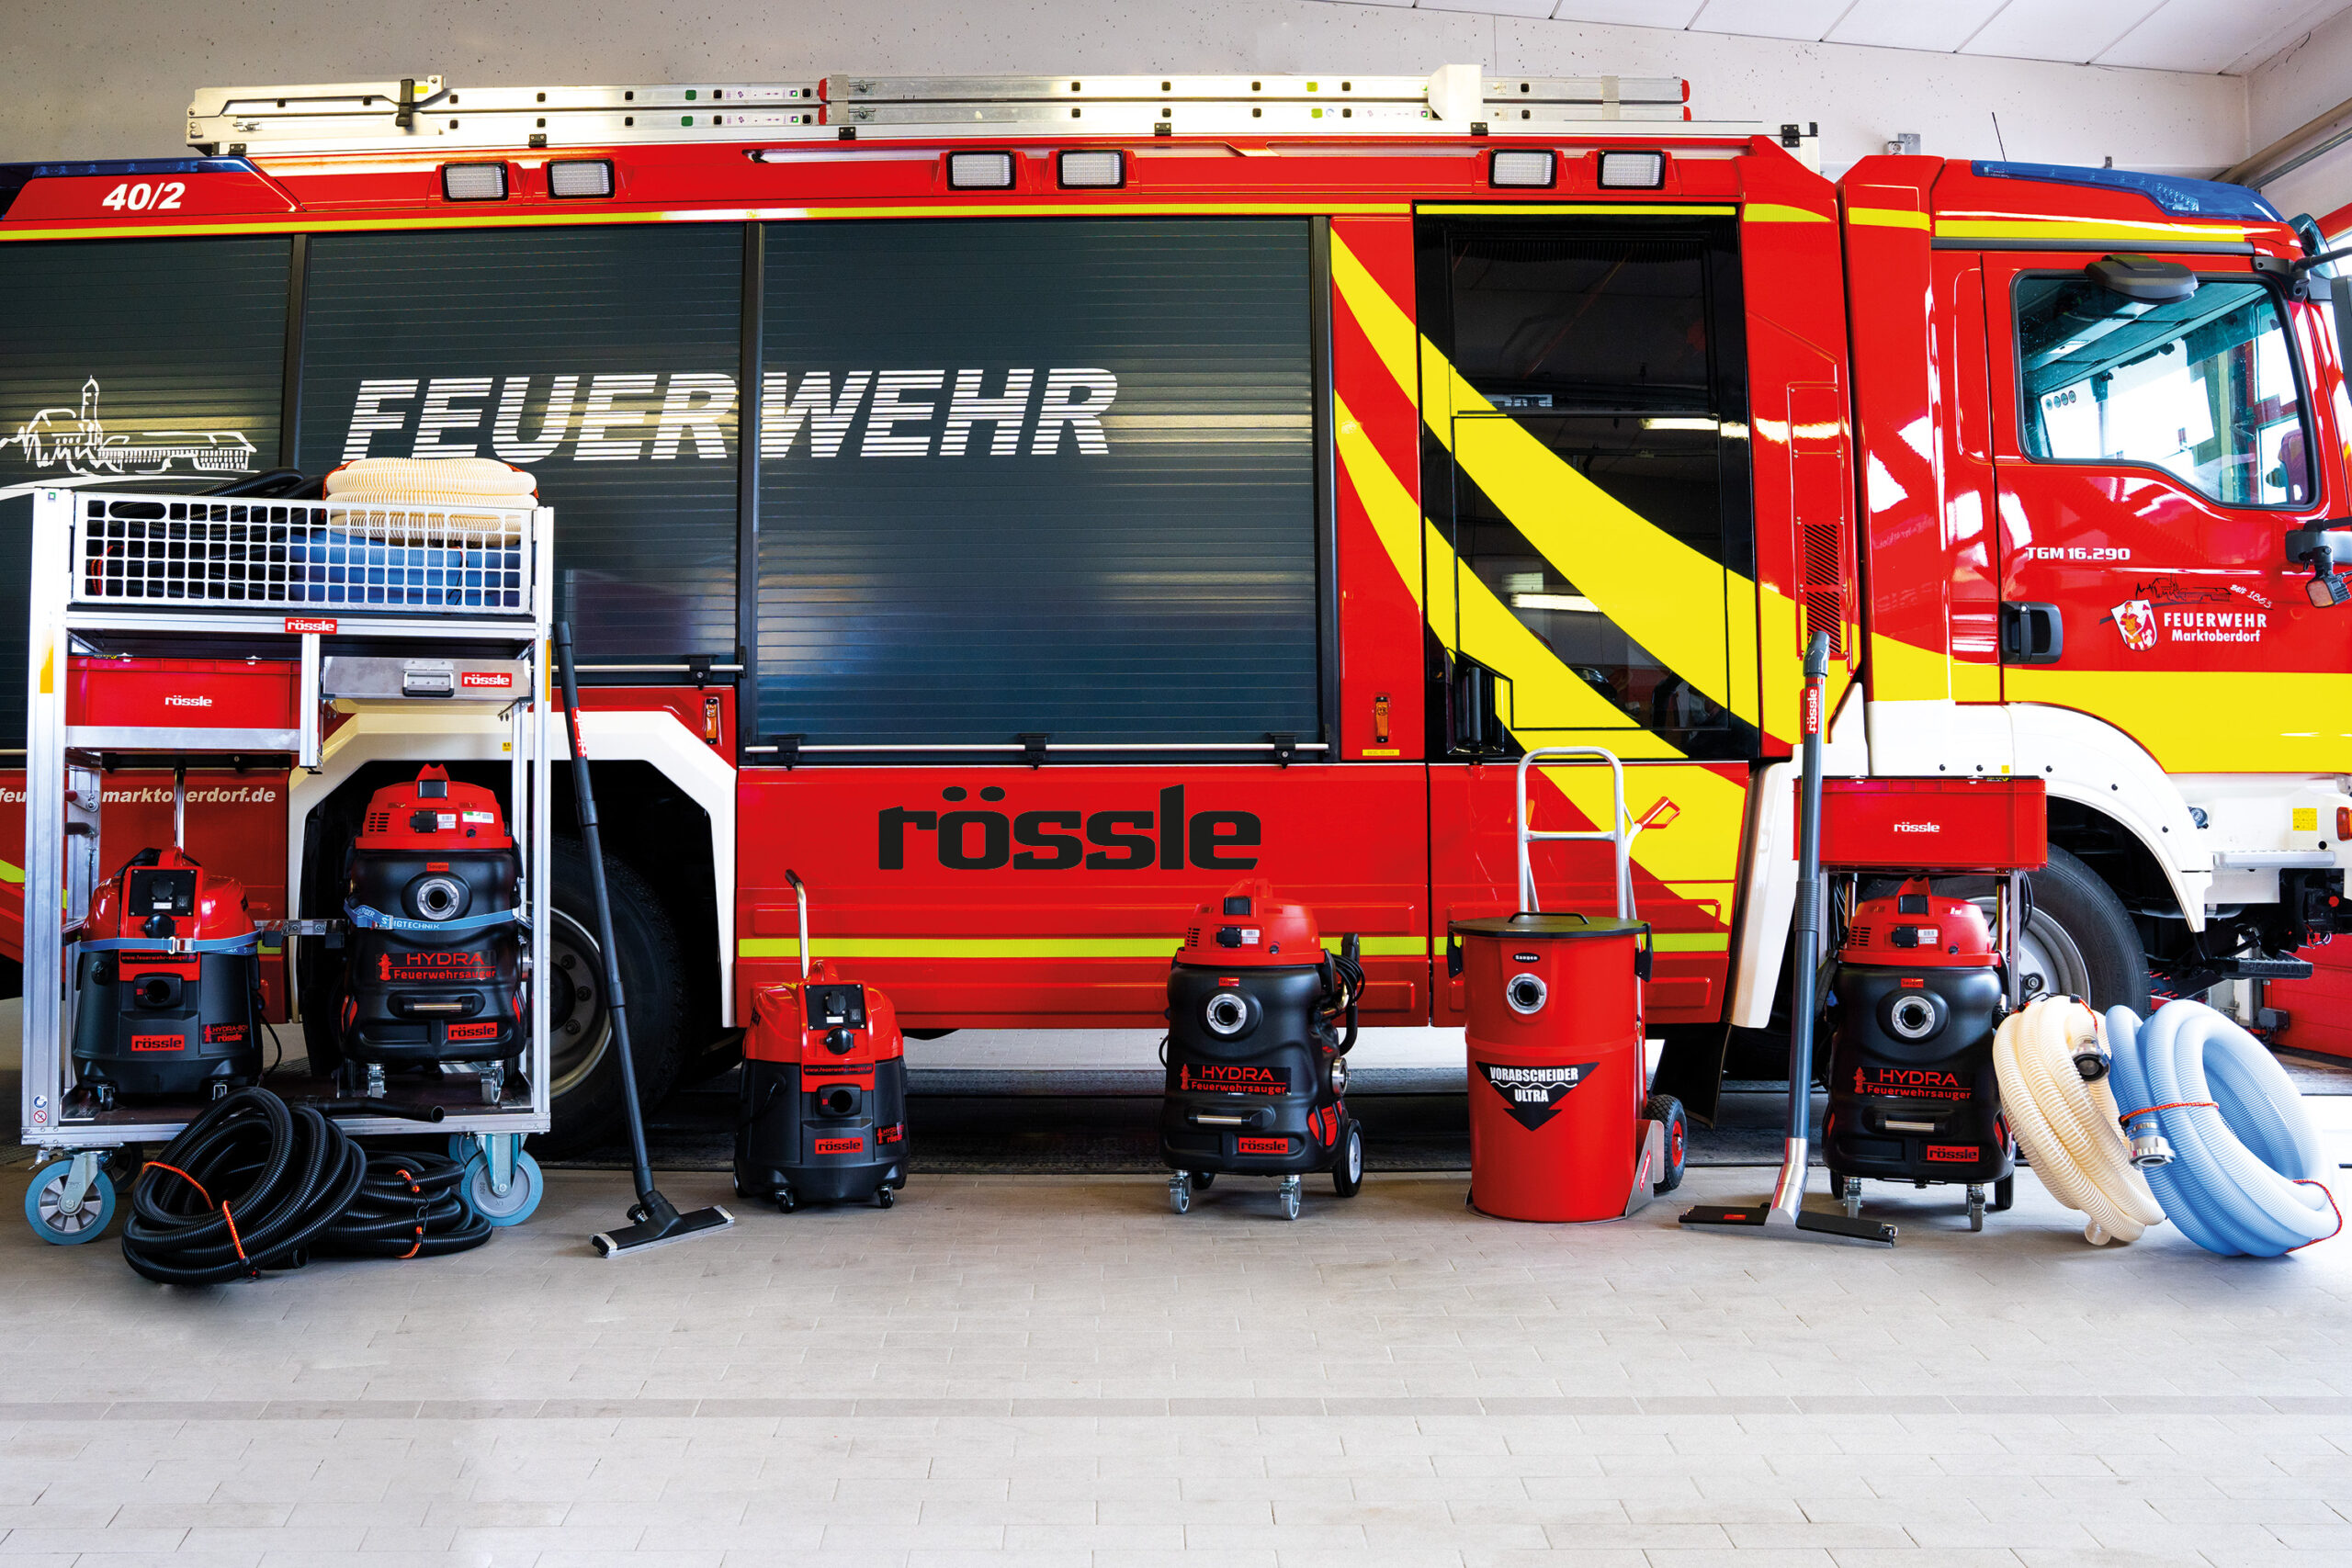 Aspirateurs pour pompiers, famille de produits Rössle